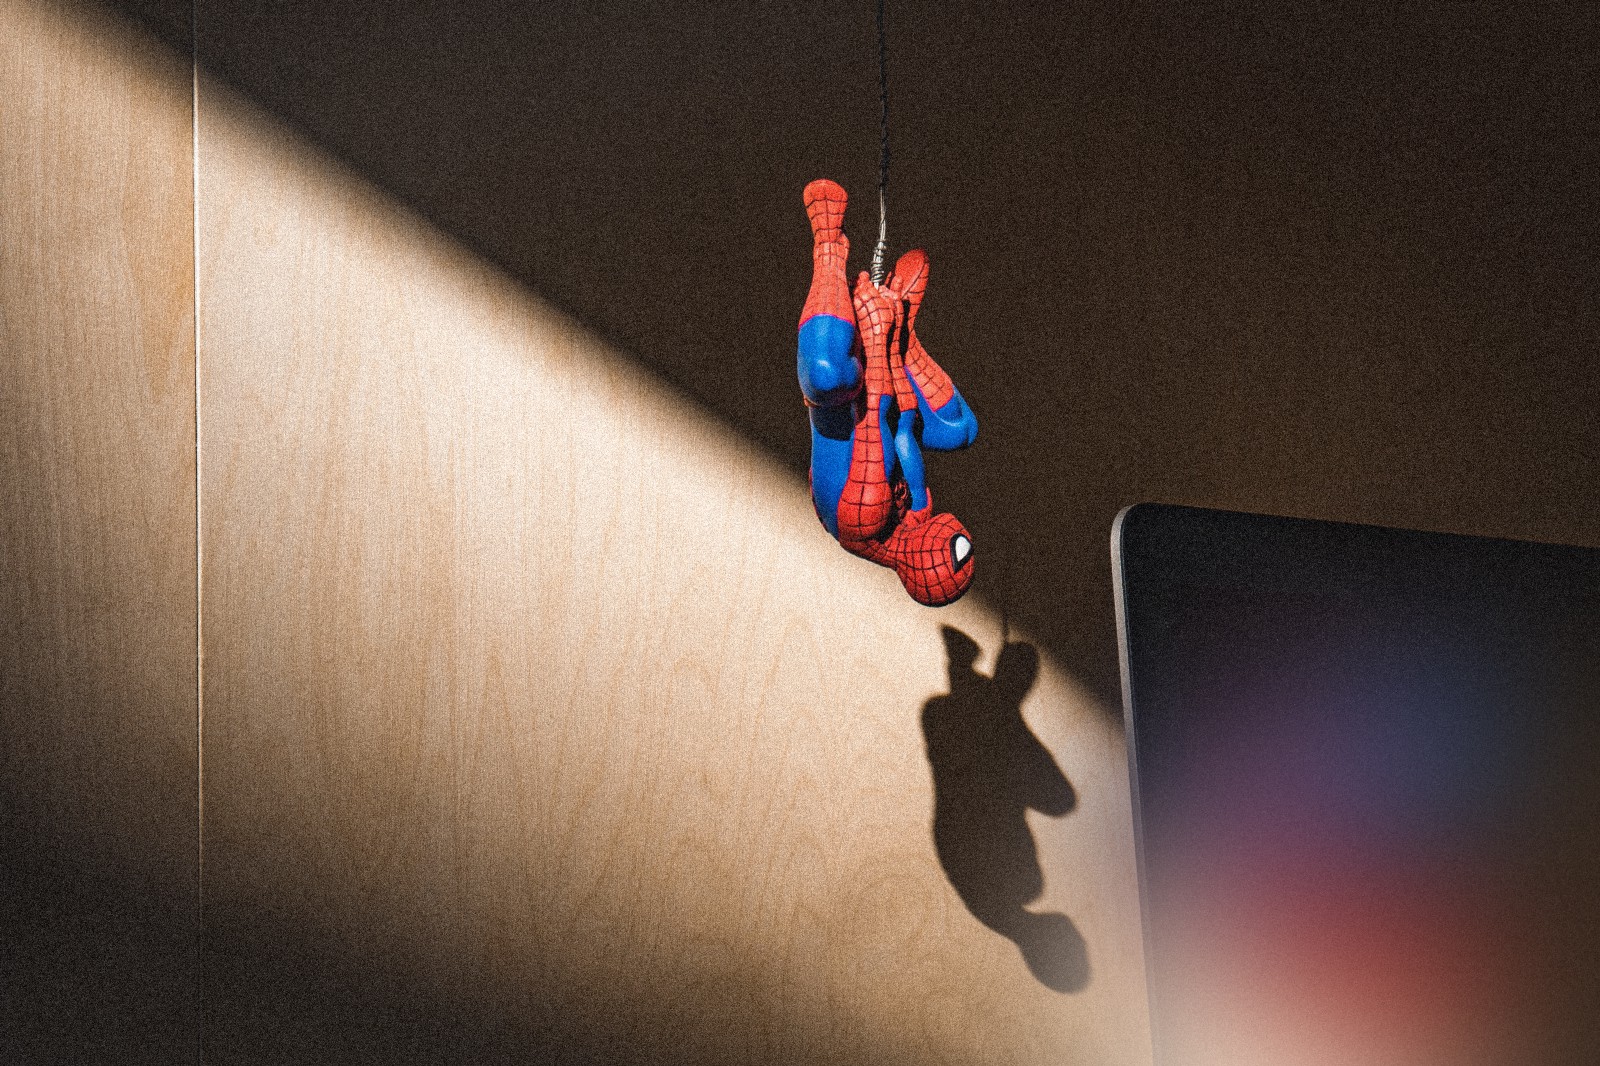 Spider-man figurine hanging upside down